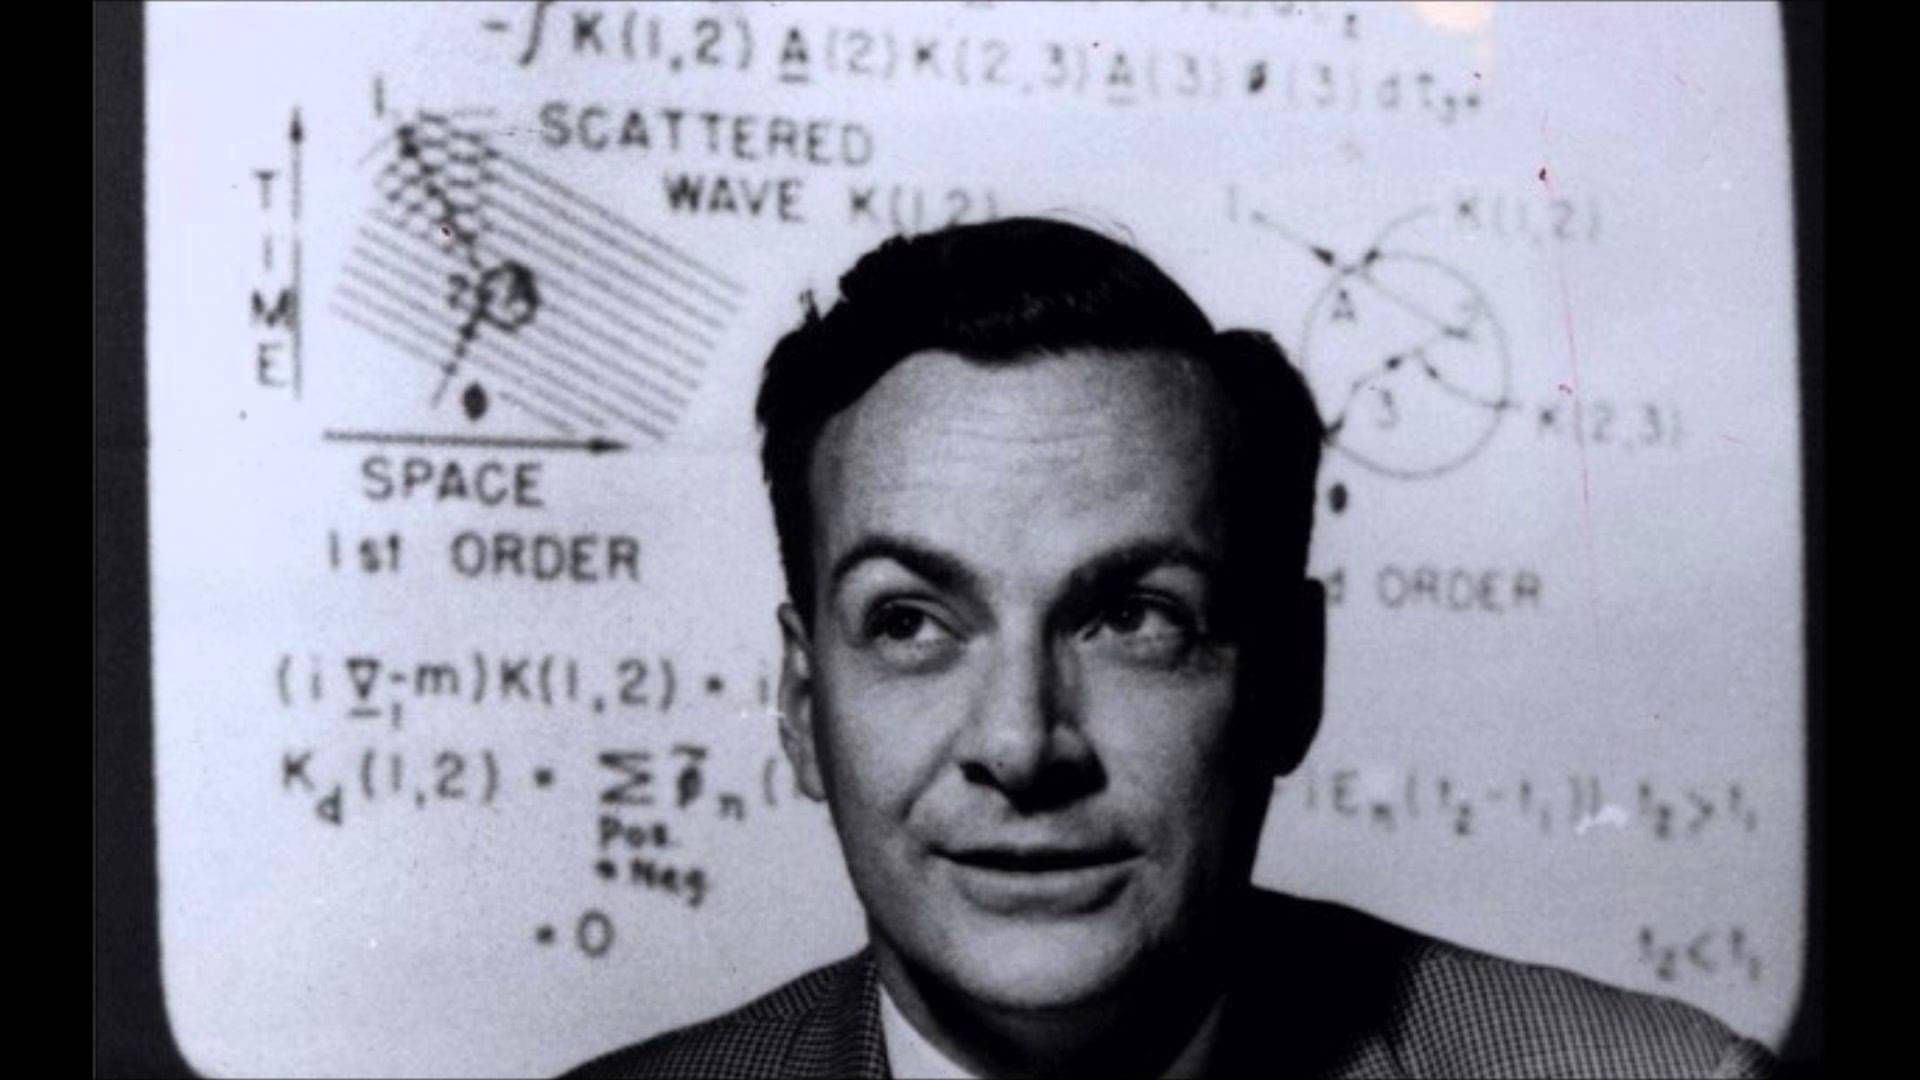 rochard feynman